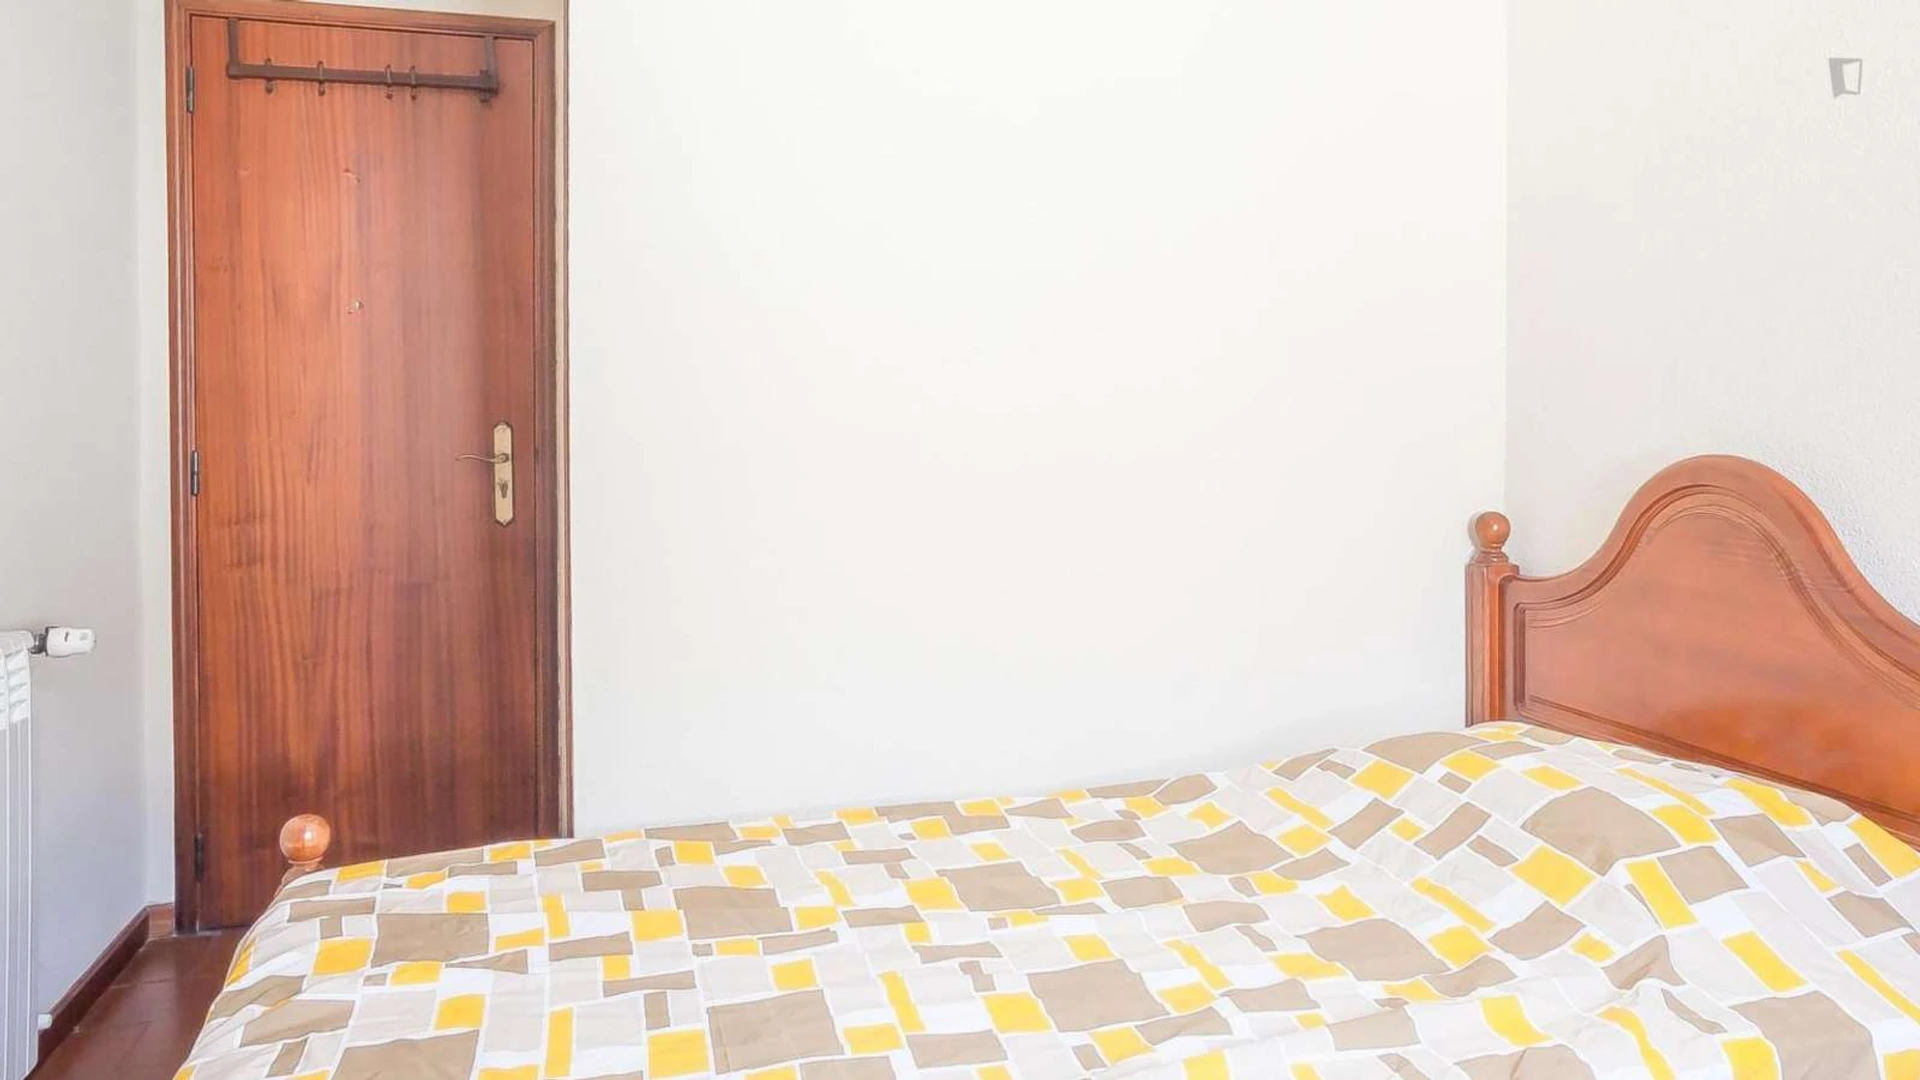 Quarto para alugar com cama de casal em Coimbra